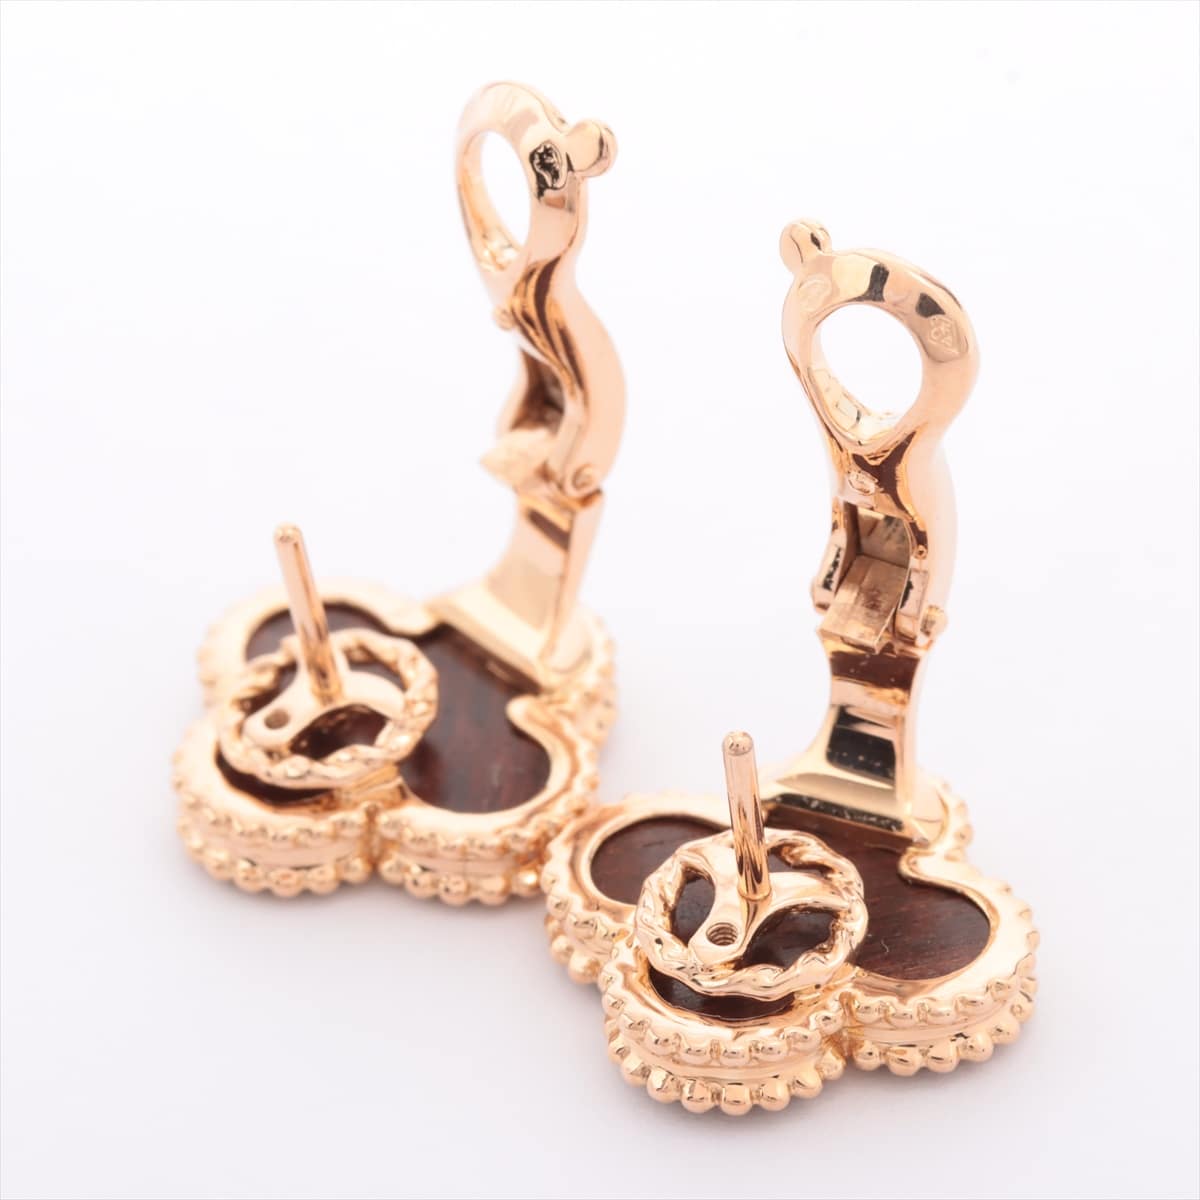 Van Cleef & Arpels Van Cleef & Arpels Vintage Alhambra Piercing jewelry 750PG